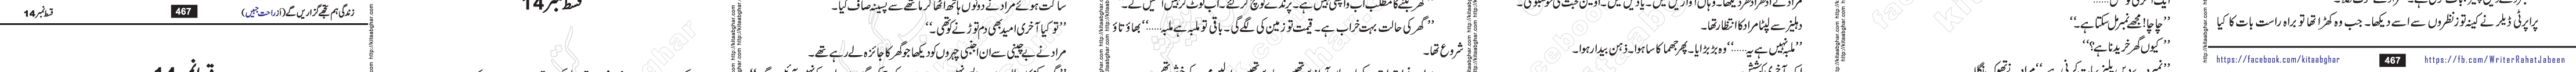 Zindagi Hum Tujhe Guzaren Ge last episode 17 & 18 Urdu Novel by Rahat Jabeen